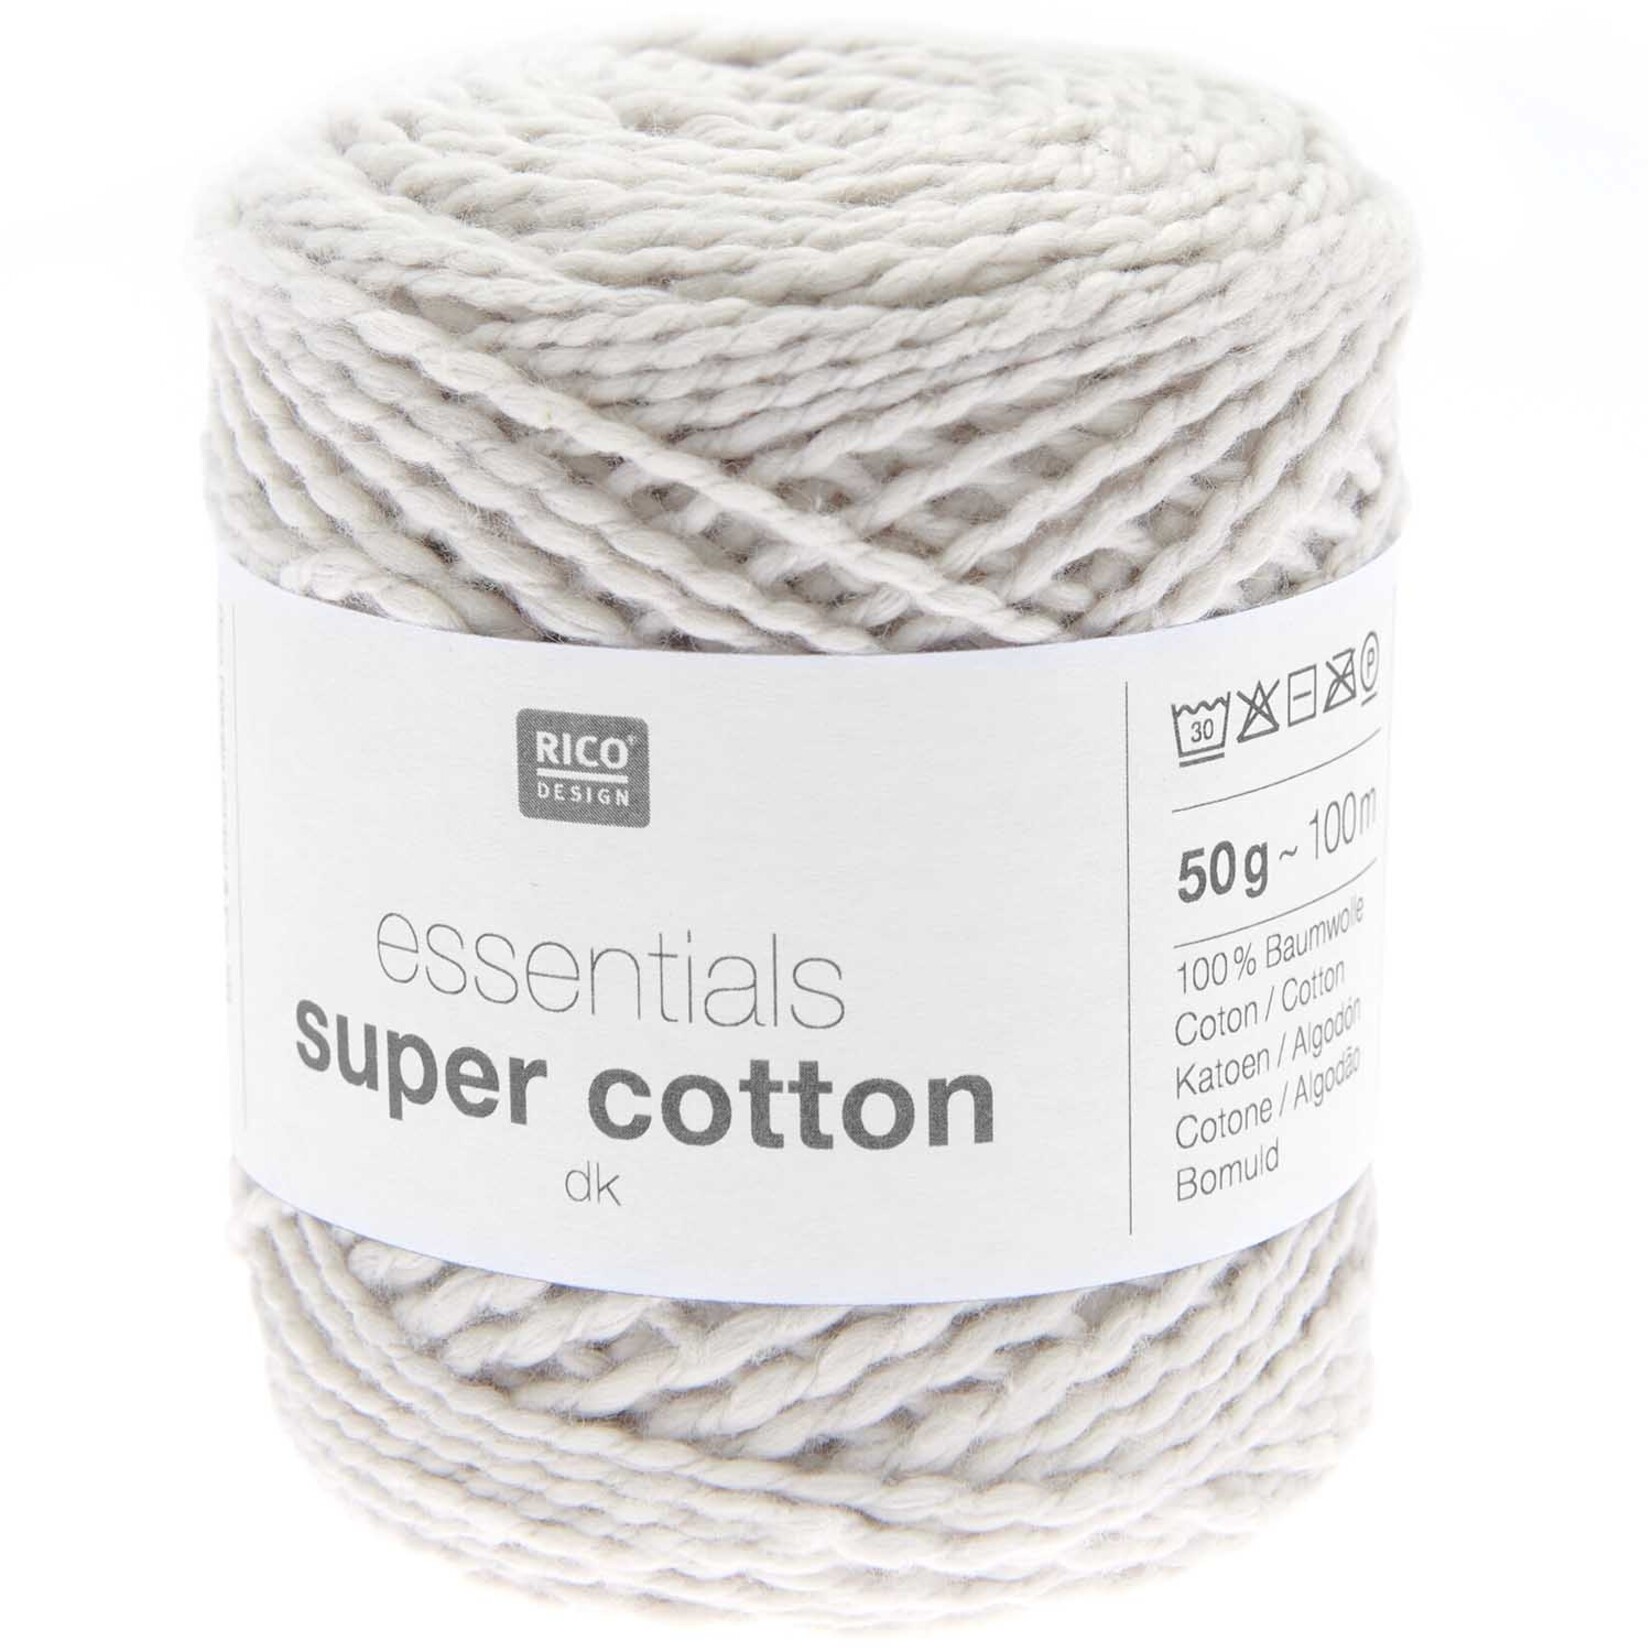 Rico Super Cotton dk 004 Ecru